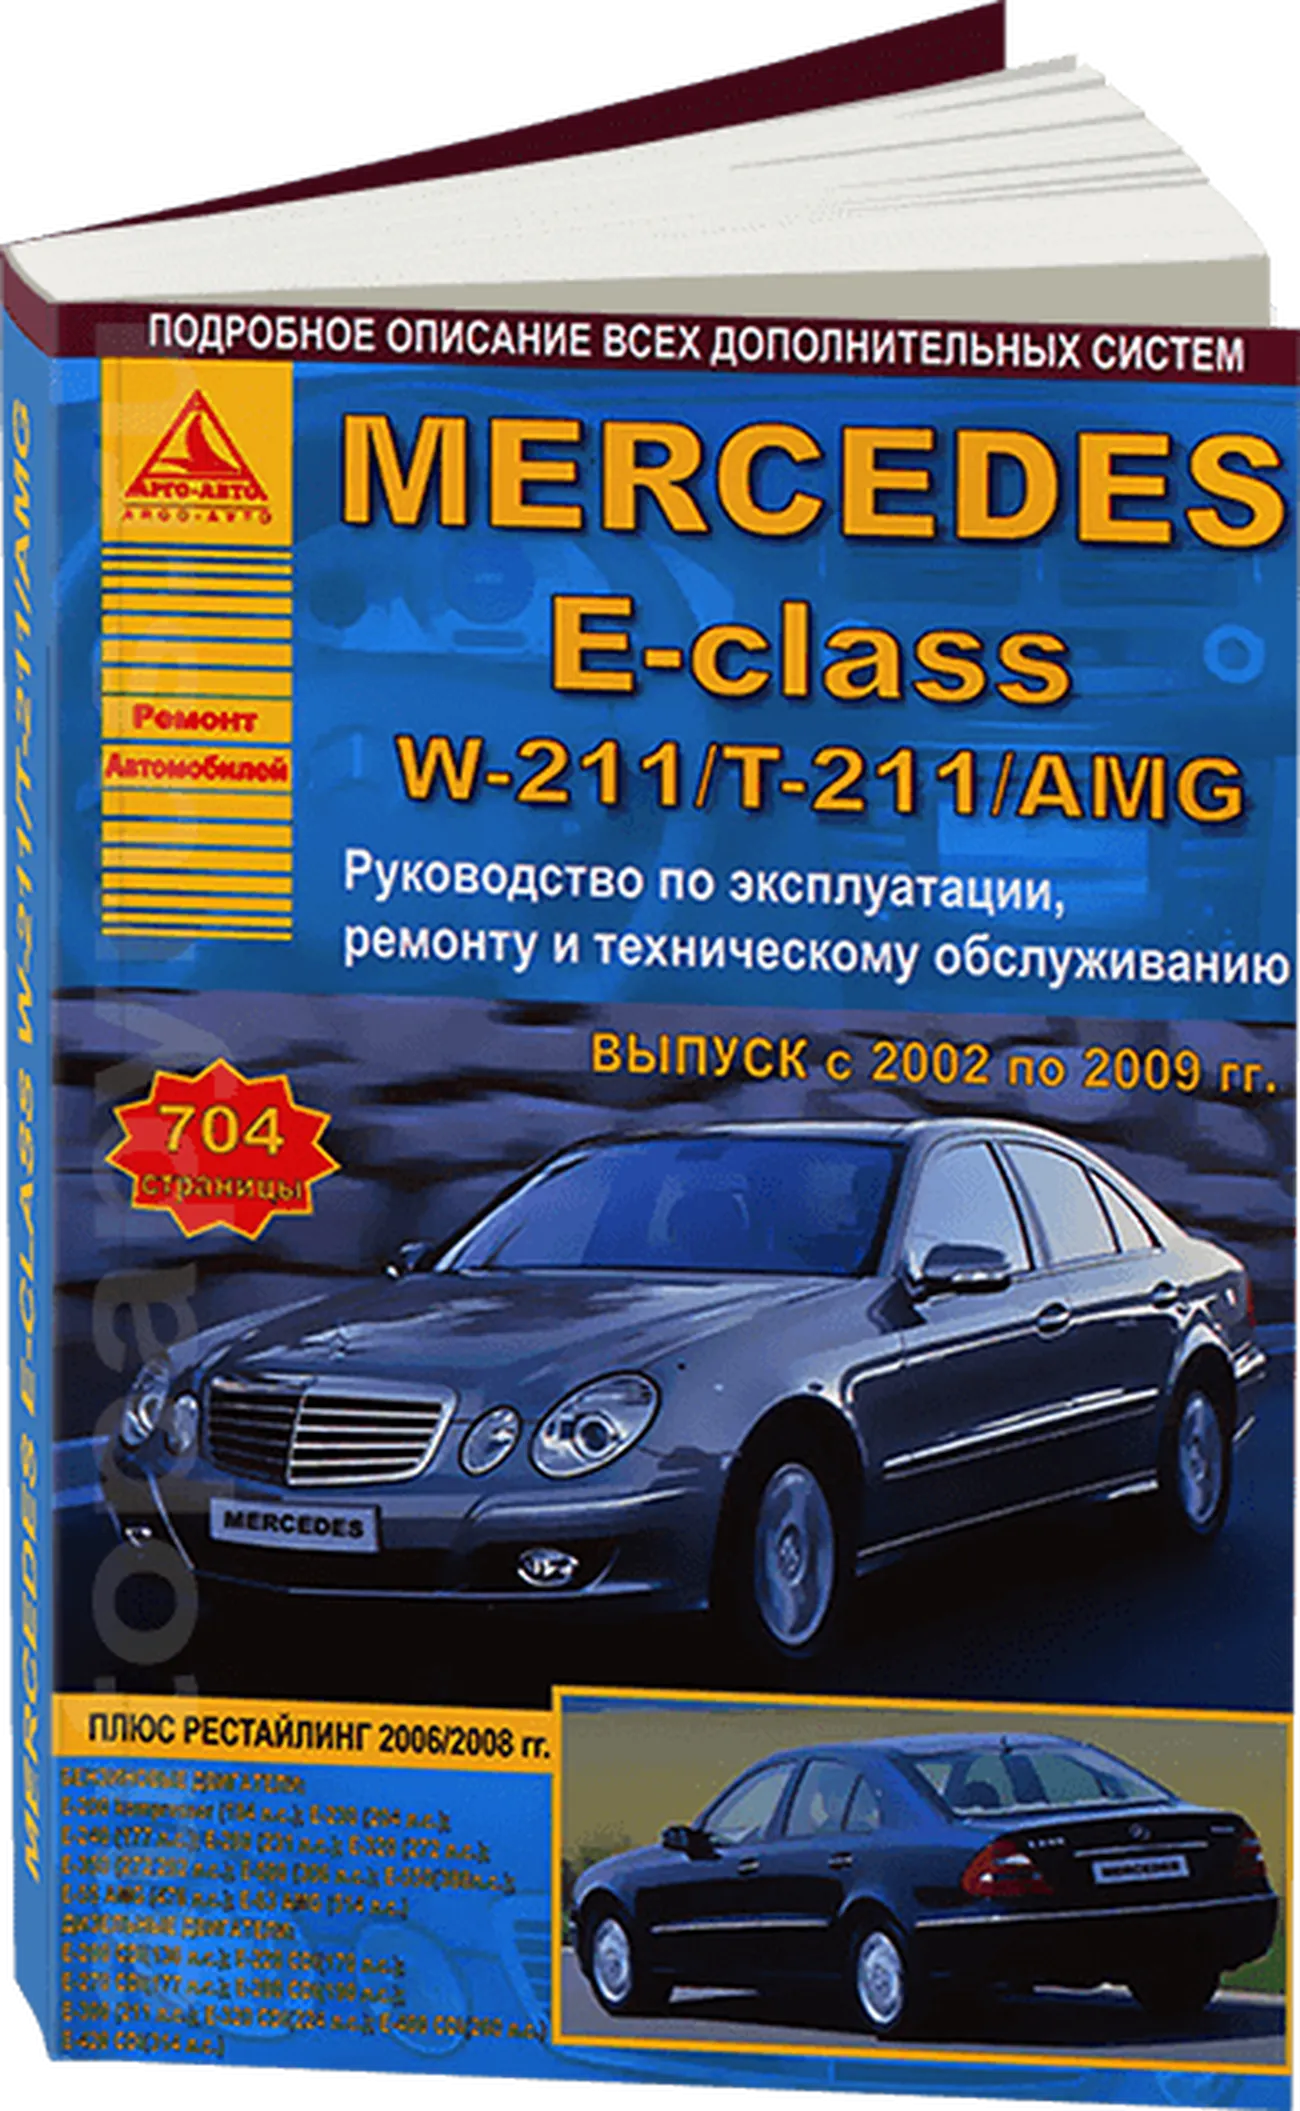 Книга: MERCEDES-BENZ E класс (W-211 / T-211 / AMG) (б , д) с 2002 по 2009 г.в., рем., экспл., то | Арго-Авто